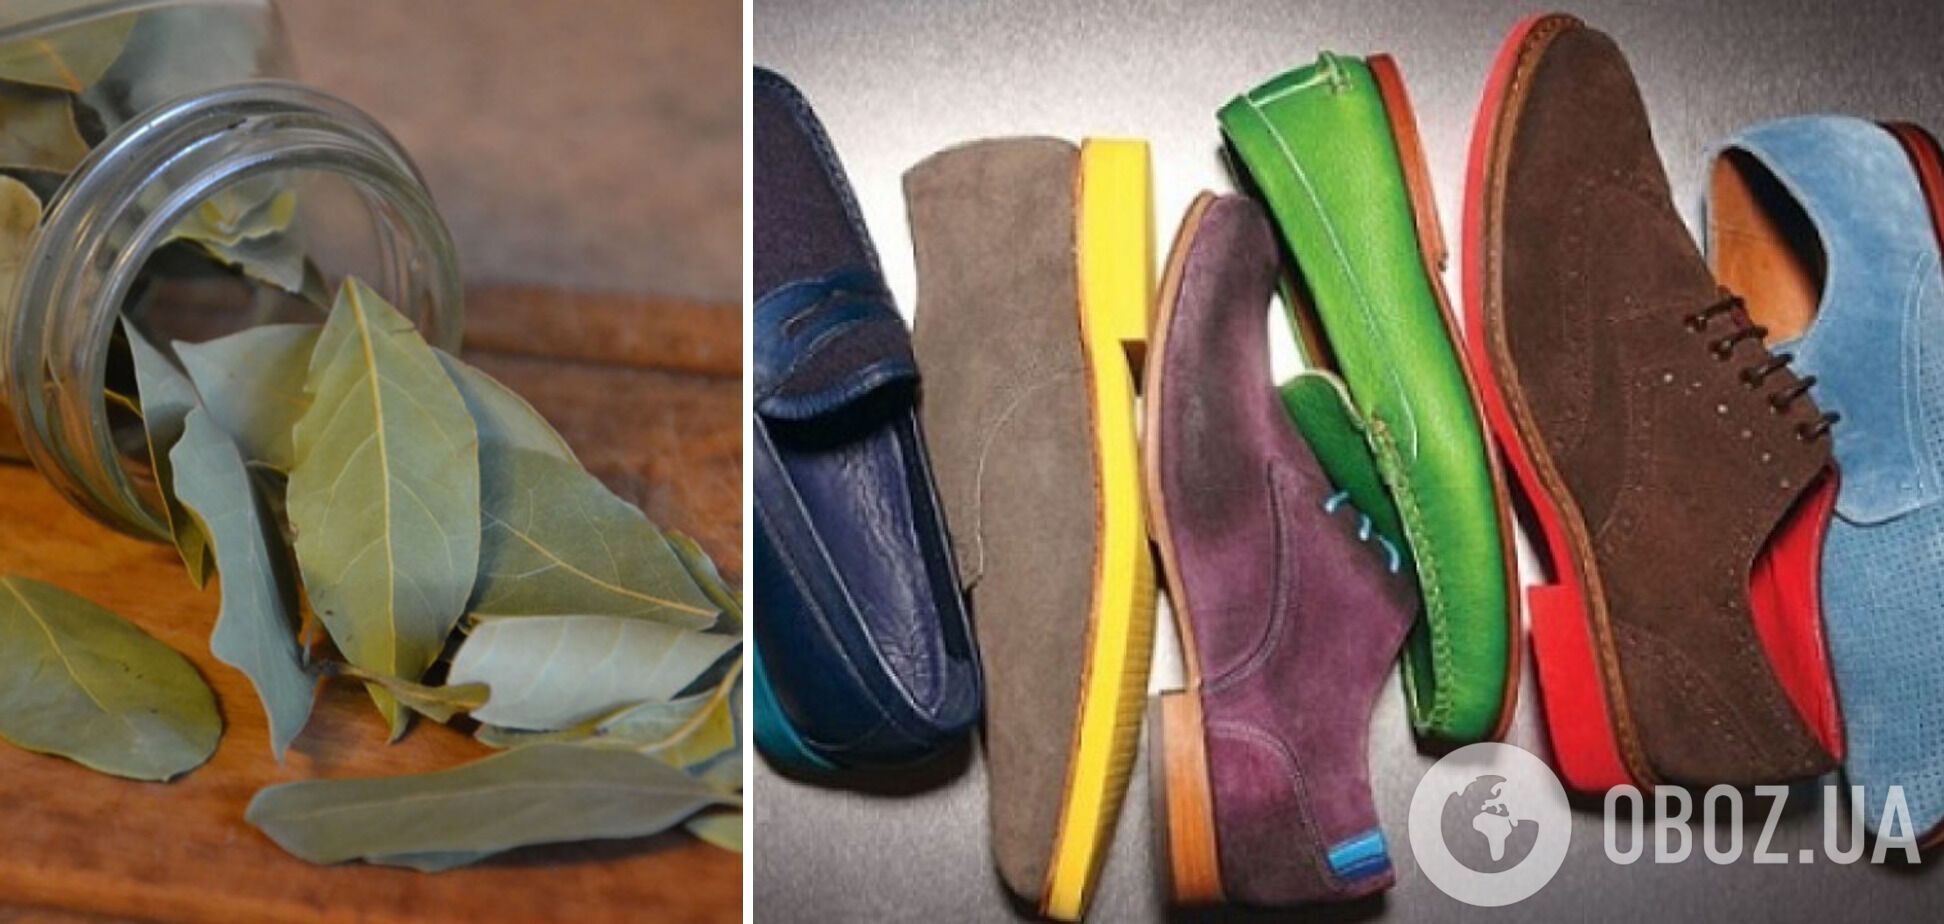 Навіщо кладуть лаврове листя у взуття: у чому секрет лайфхаку